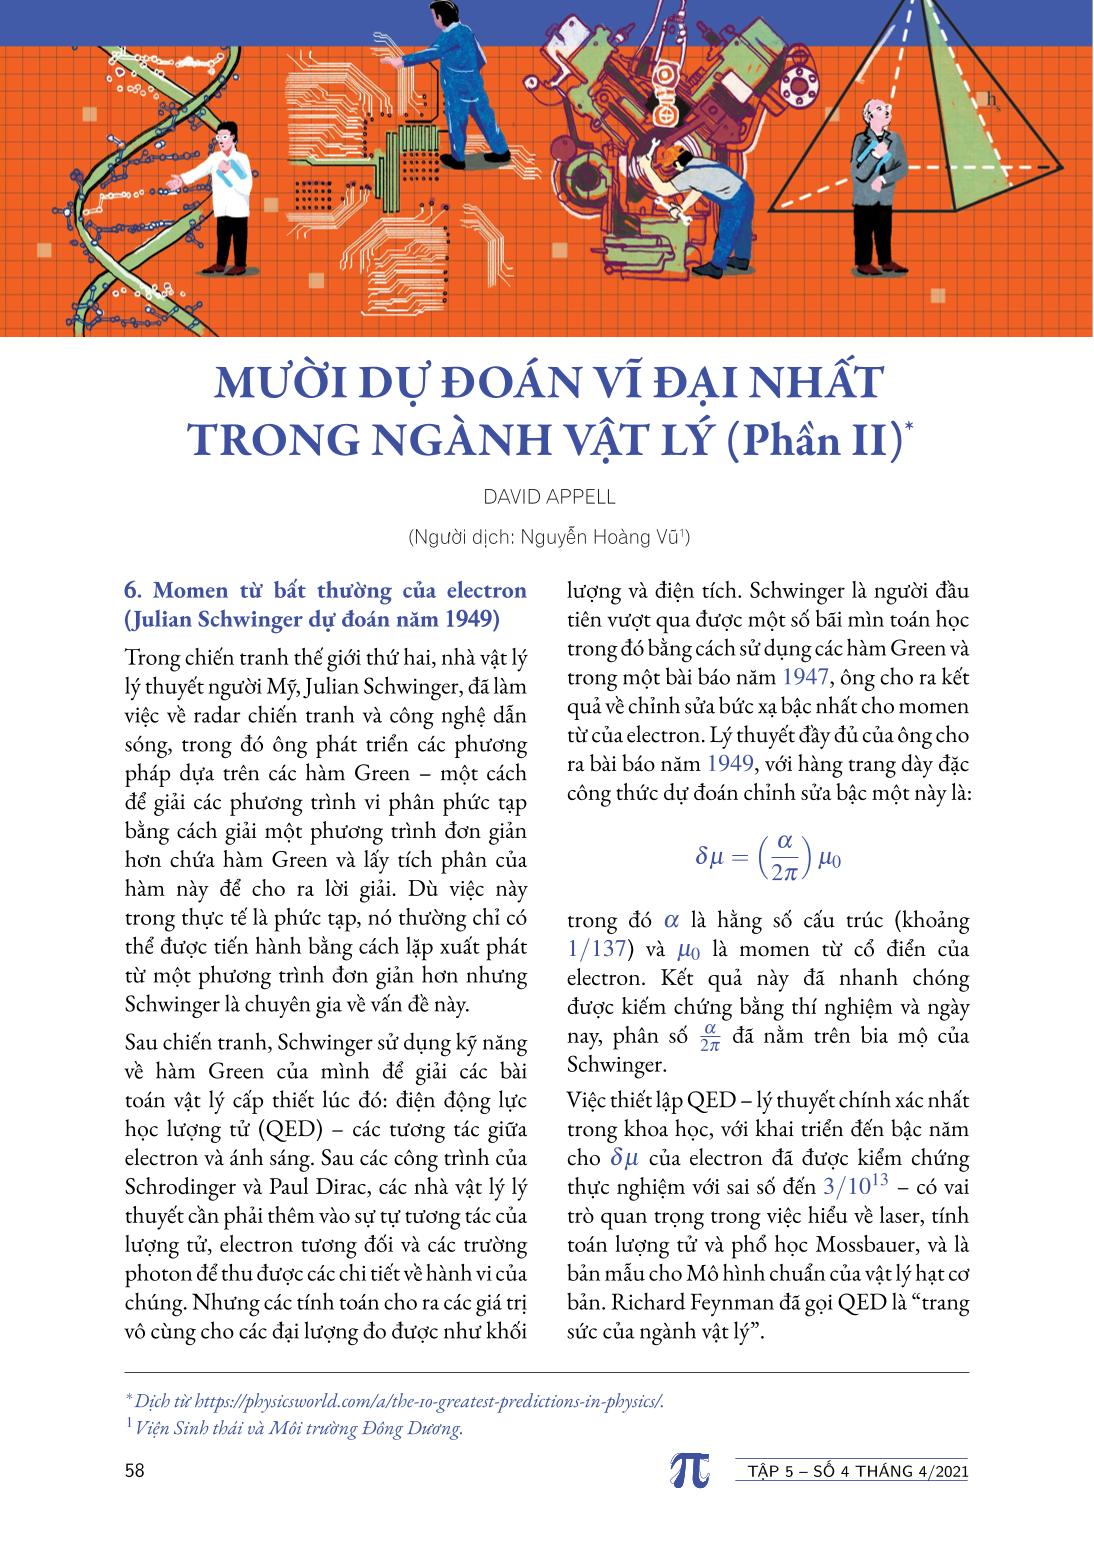 Tạp chí Pi- Hội Toán học Việt Nam số 4/ tháng 4 năm 2021